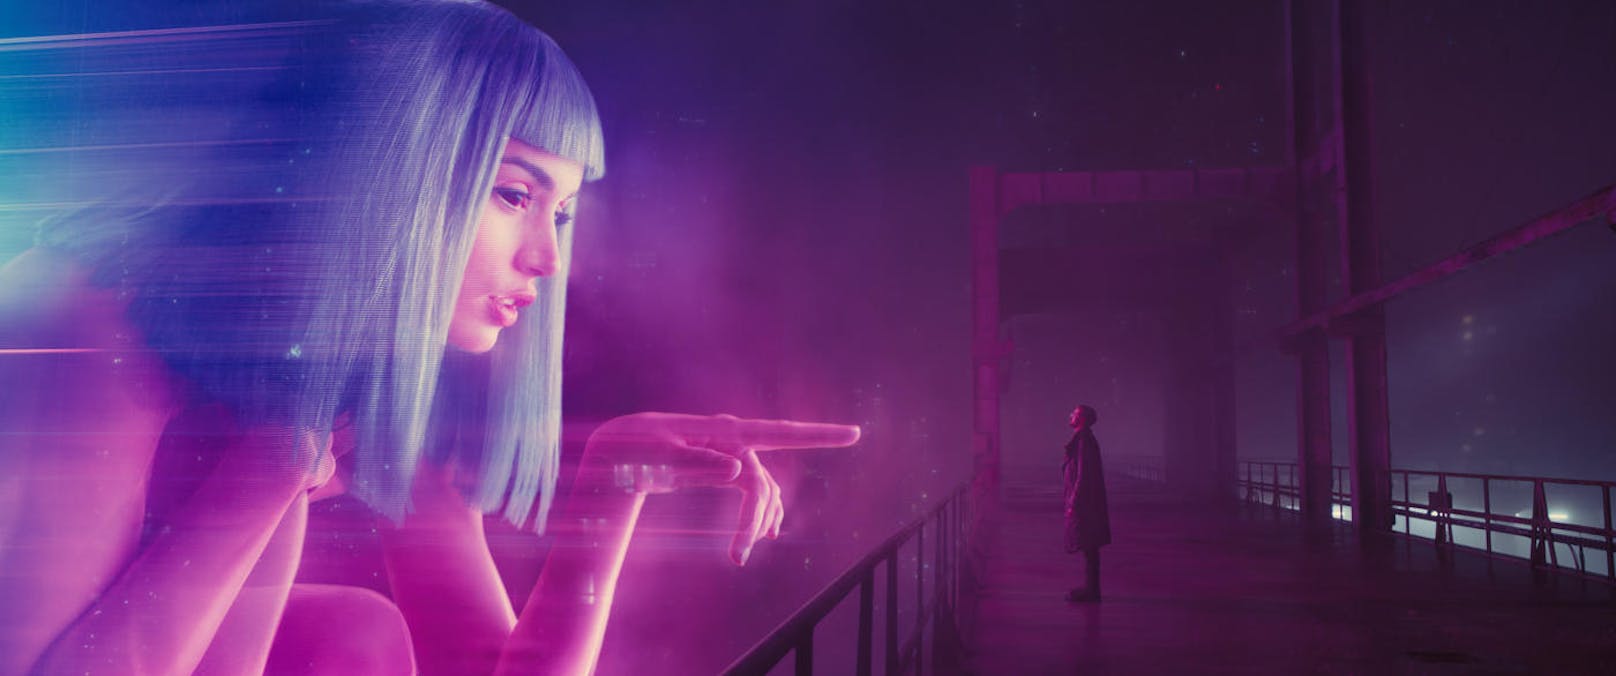 Ana de Armas in "Blade Runner 2049"